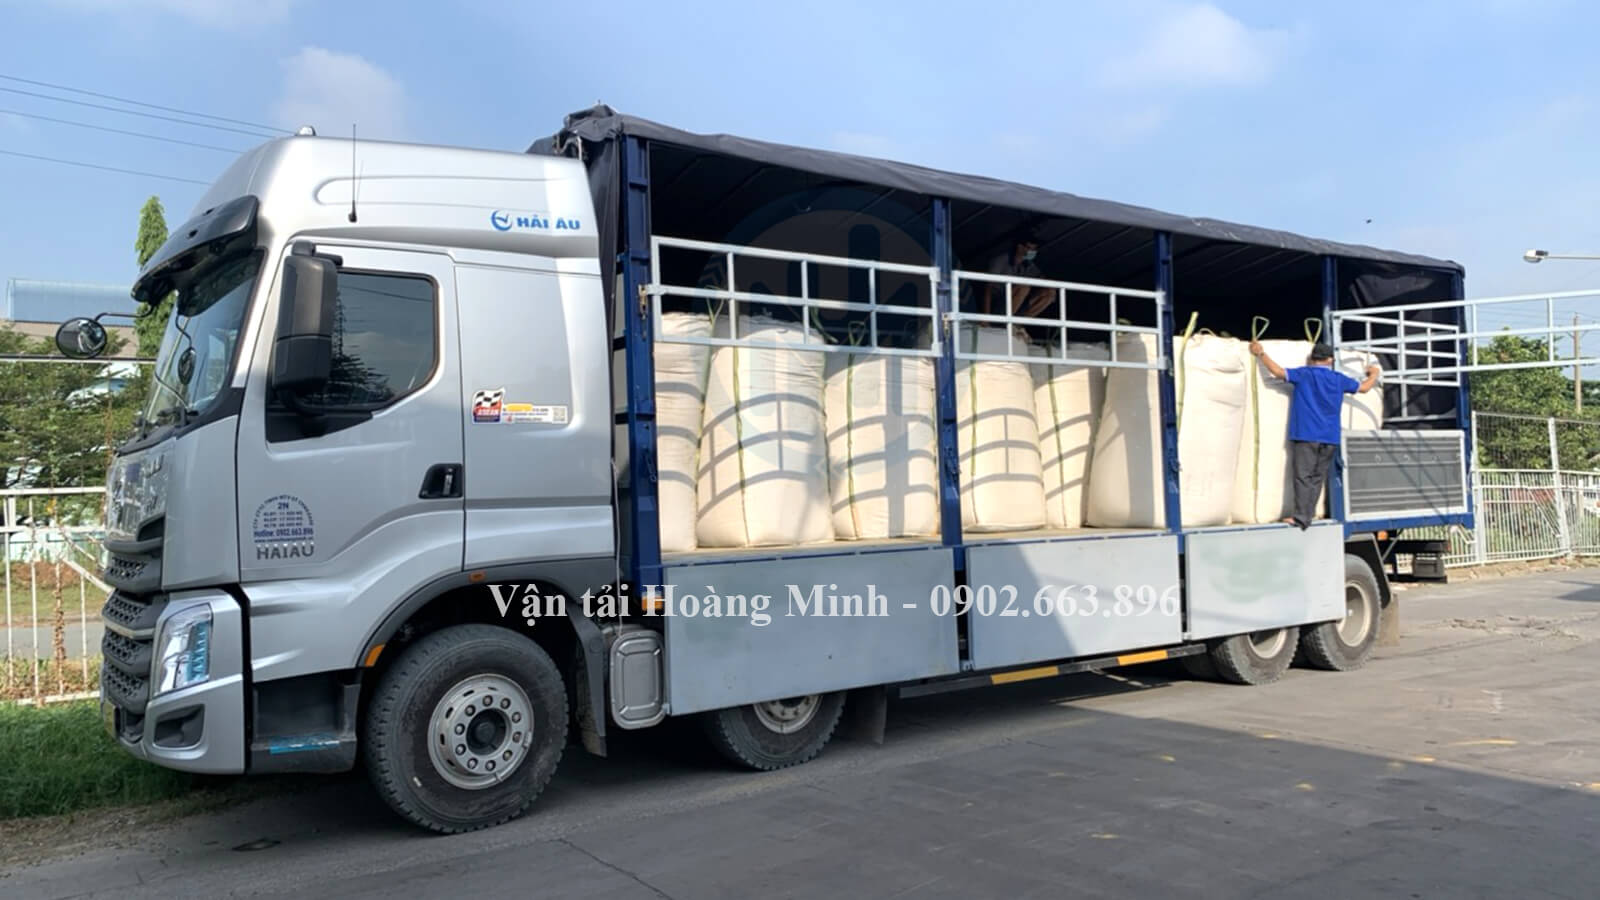 Cách thức đặt thuê xe tải chở hàng Quận Phú Nhuận của Vận tải Hoàng Minh như thế nào